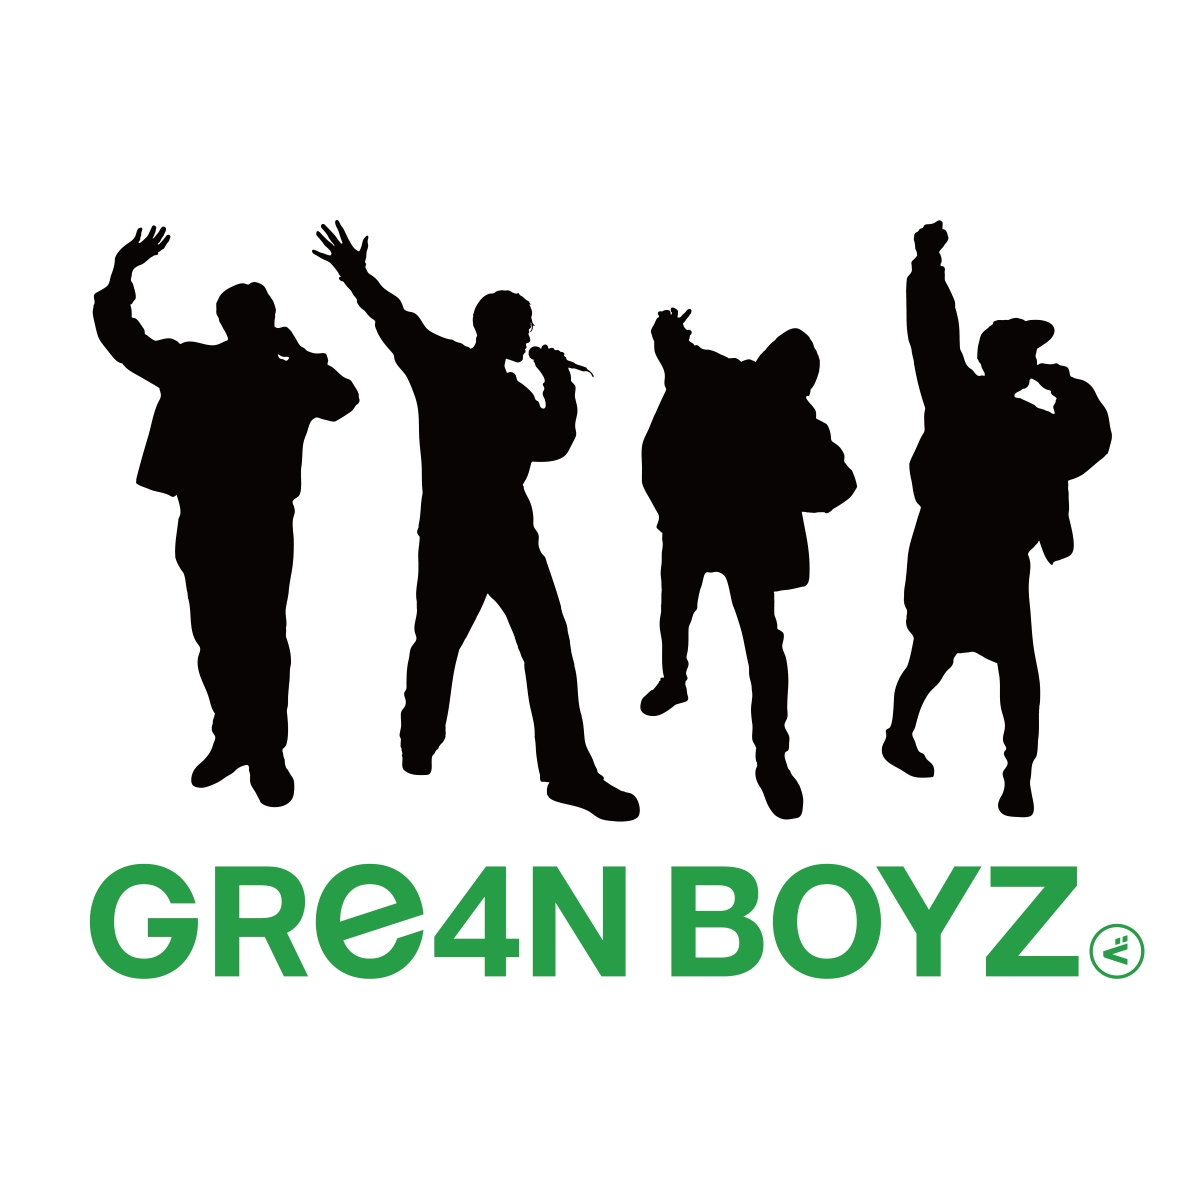 GRe4N BOYZ、改名後初の全国ツアー開催